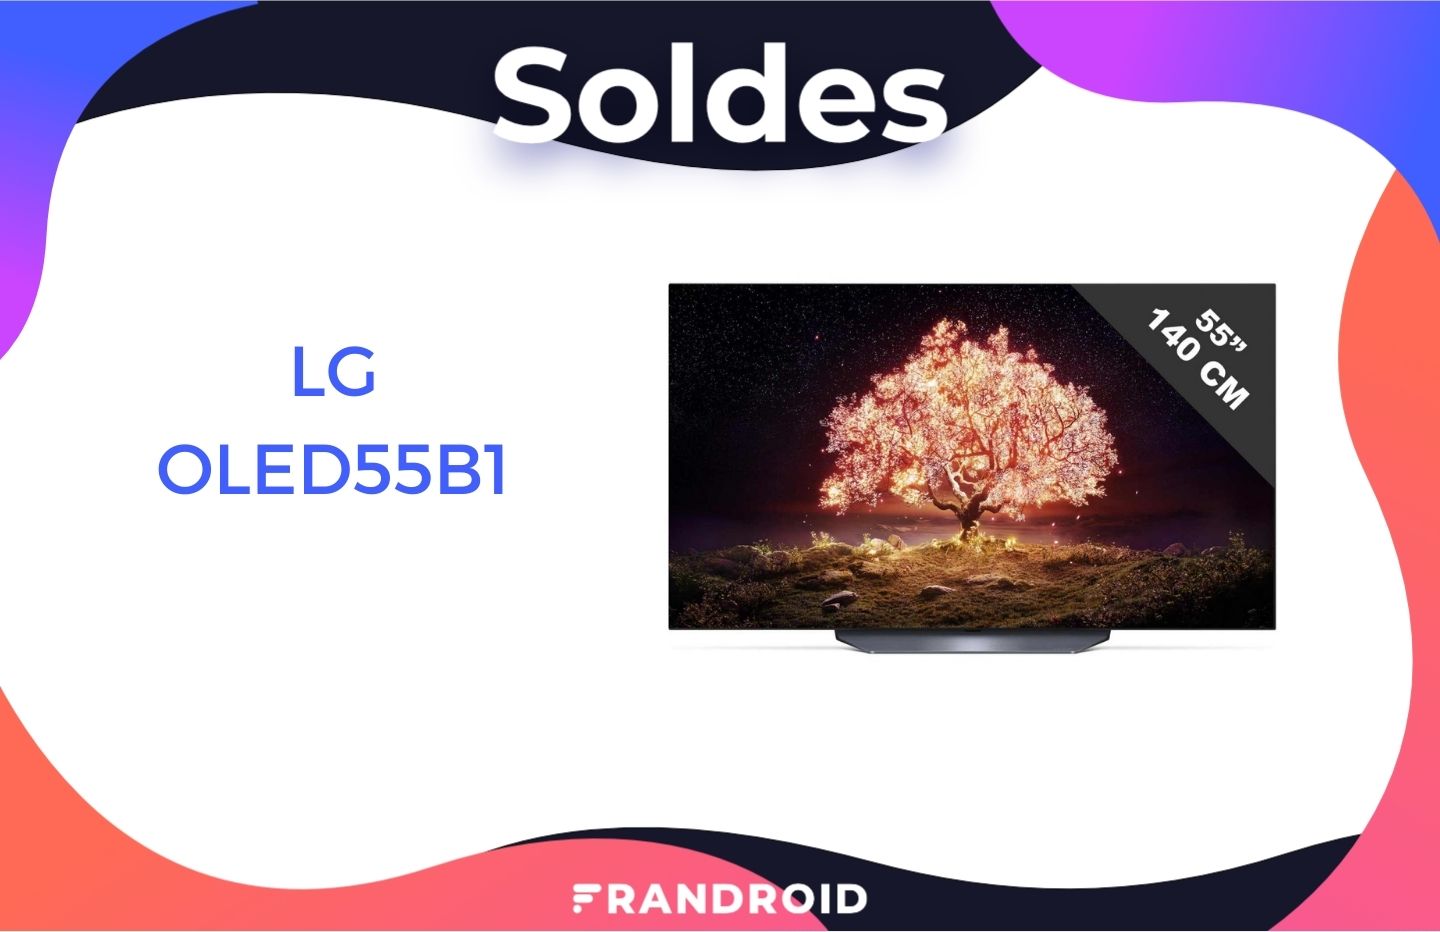 En solde, la TV LG OLED55B1 (avec HDMI 2.1) chute sous les 1 000 €